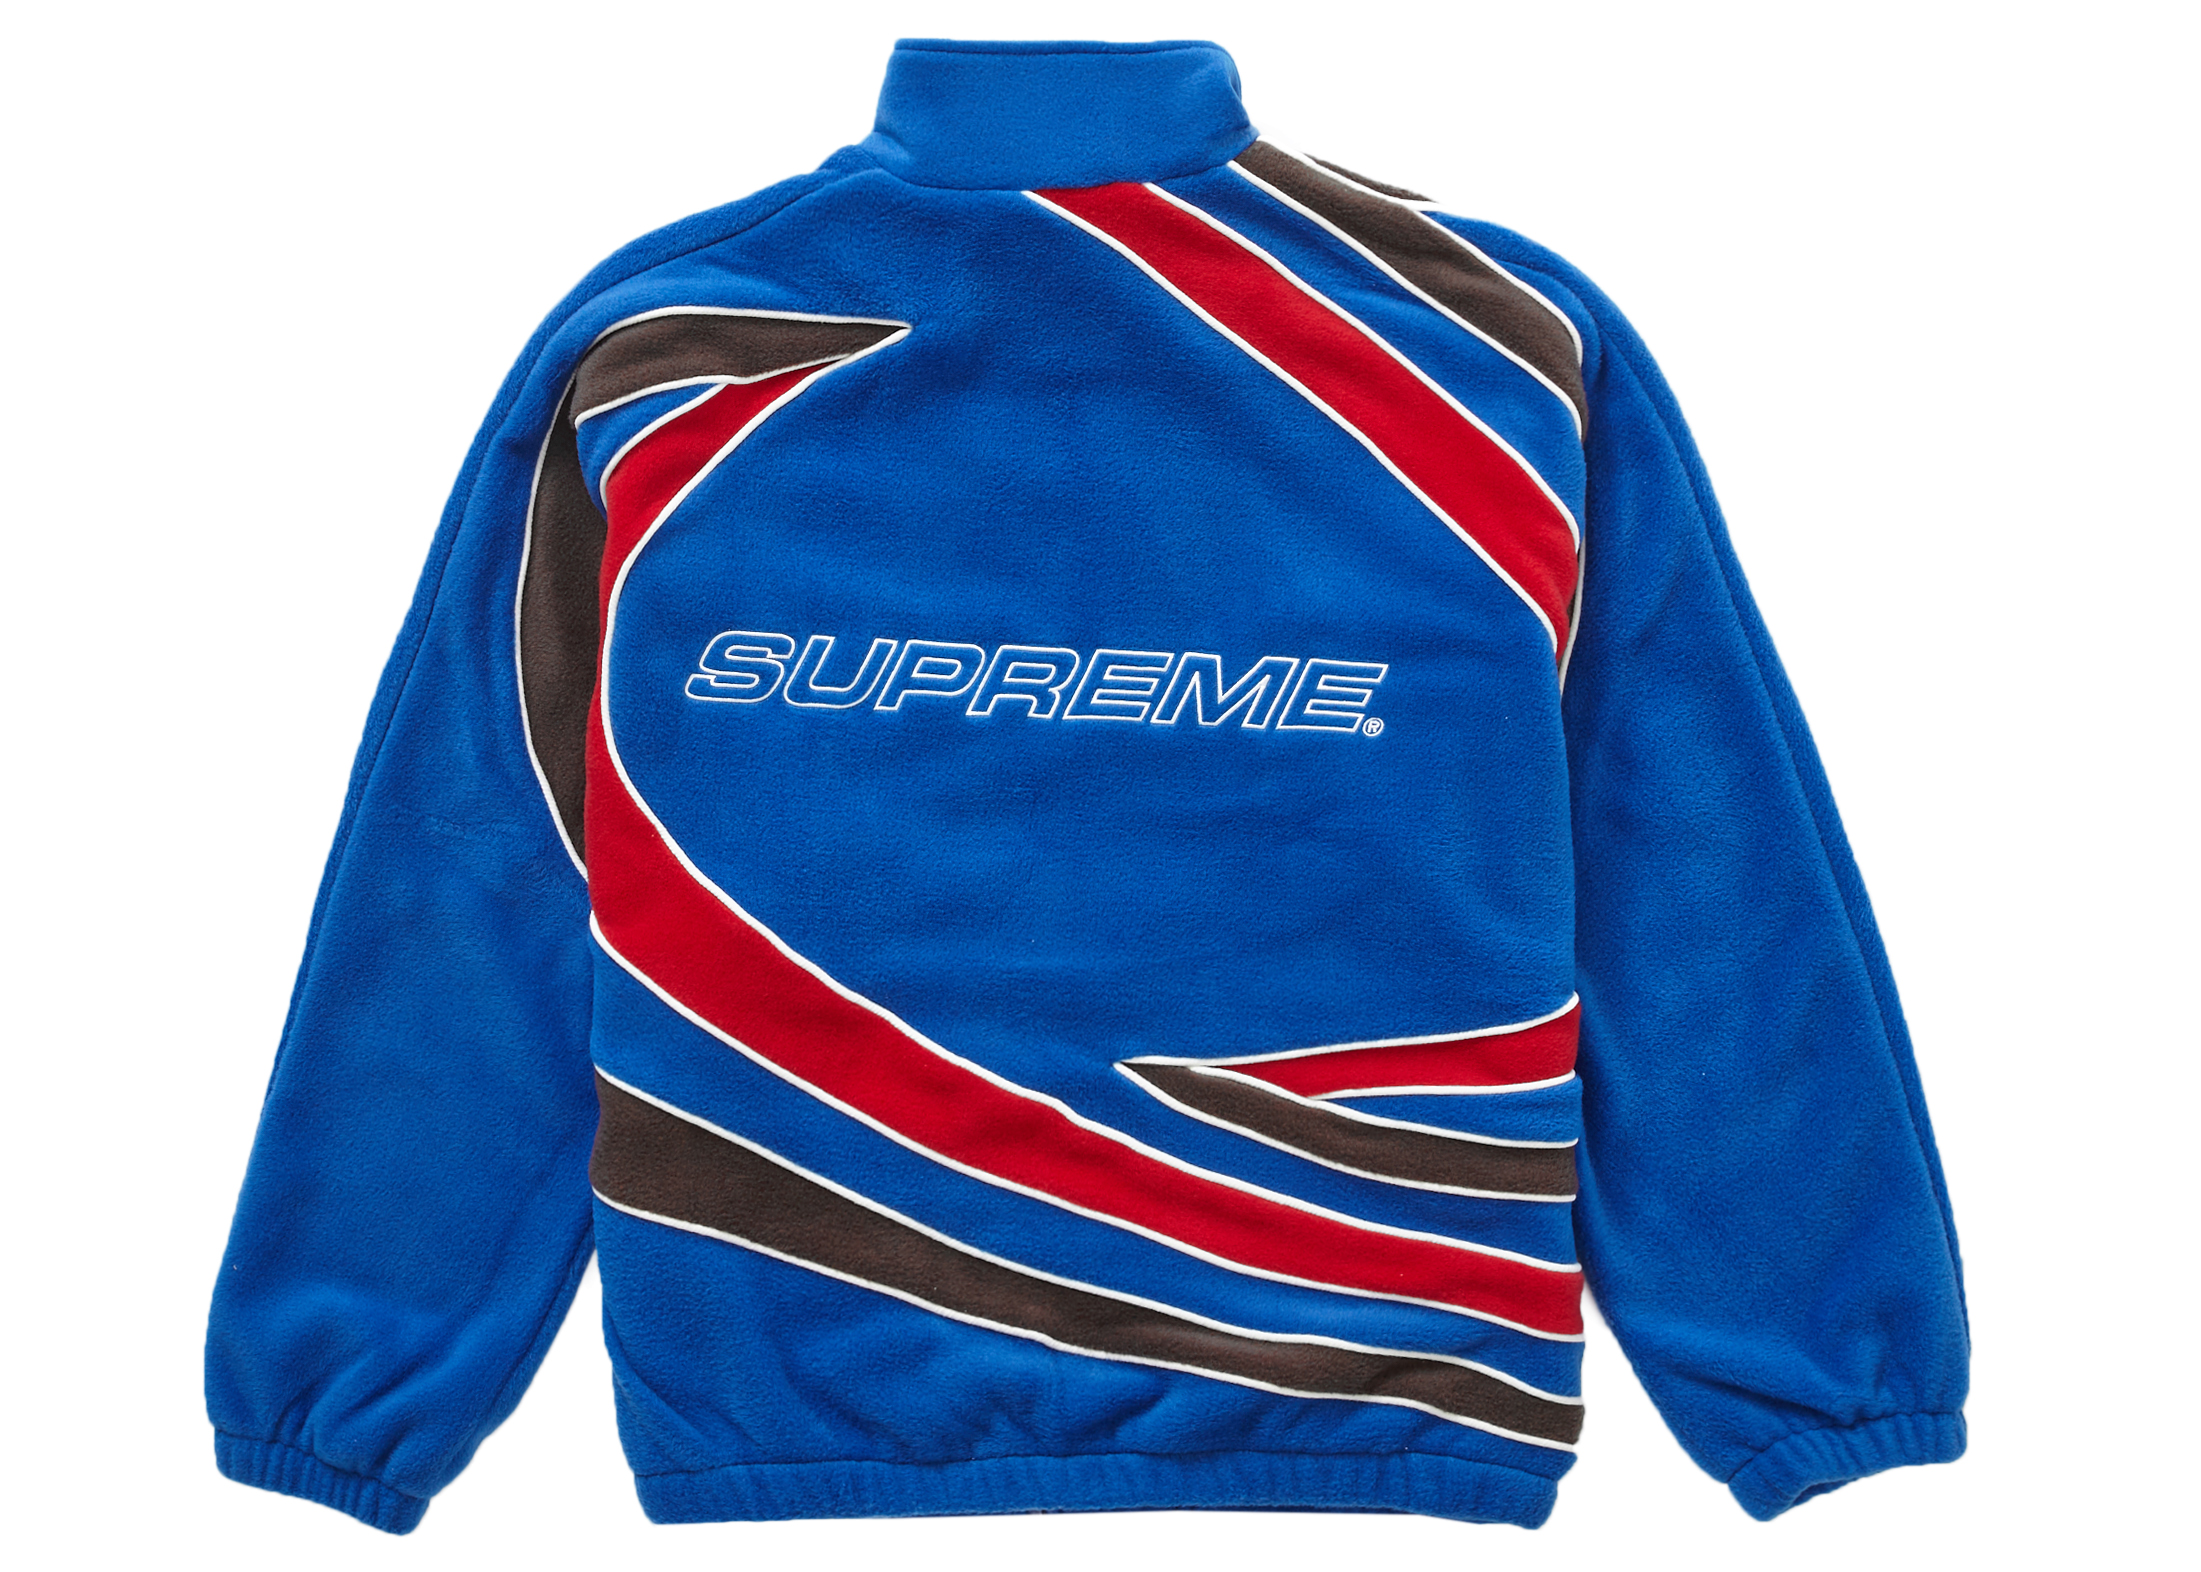 supreme Racing Fleece Jacket 値下げ可能購入よろしいでしょうか